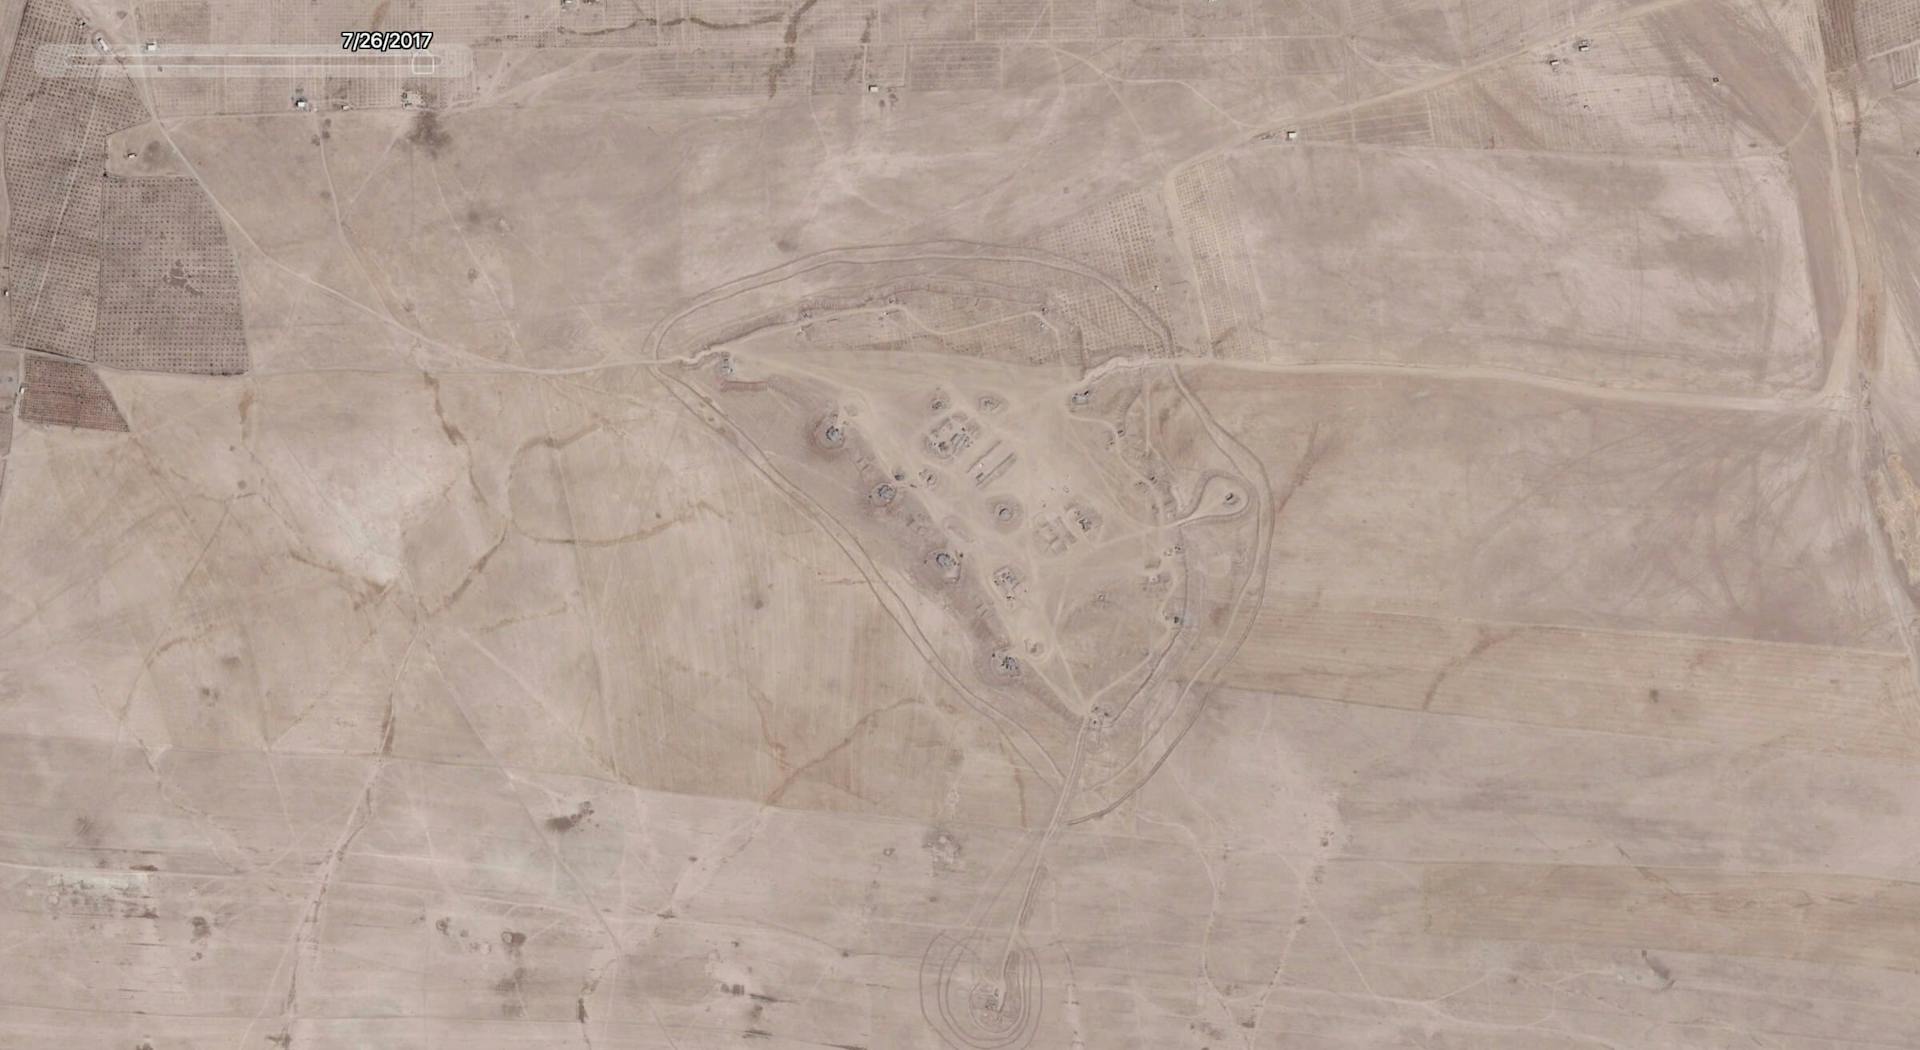 Coalition artillery base outside of Raqqa by Google Earth 